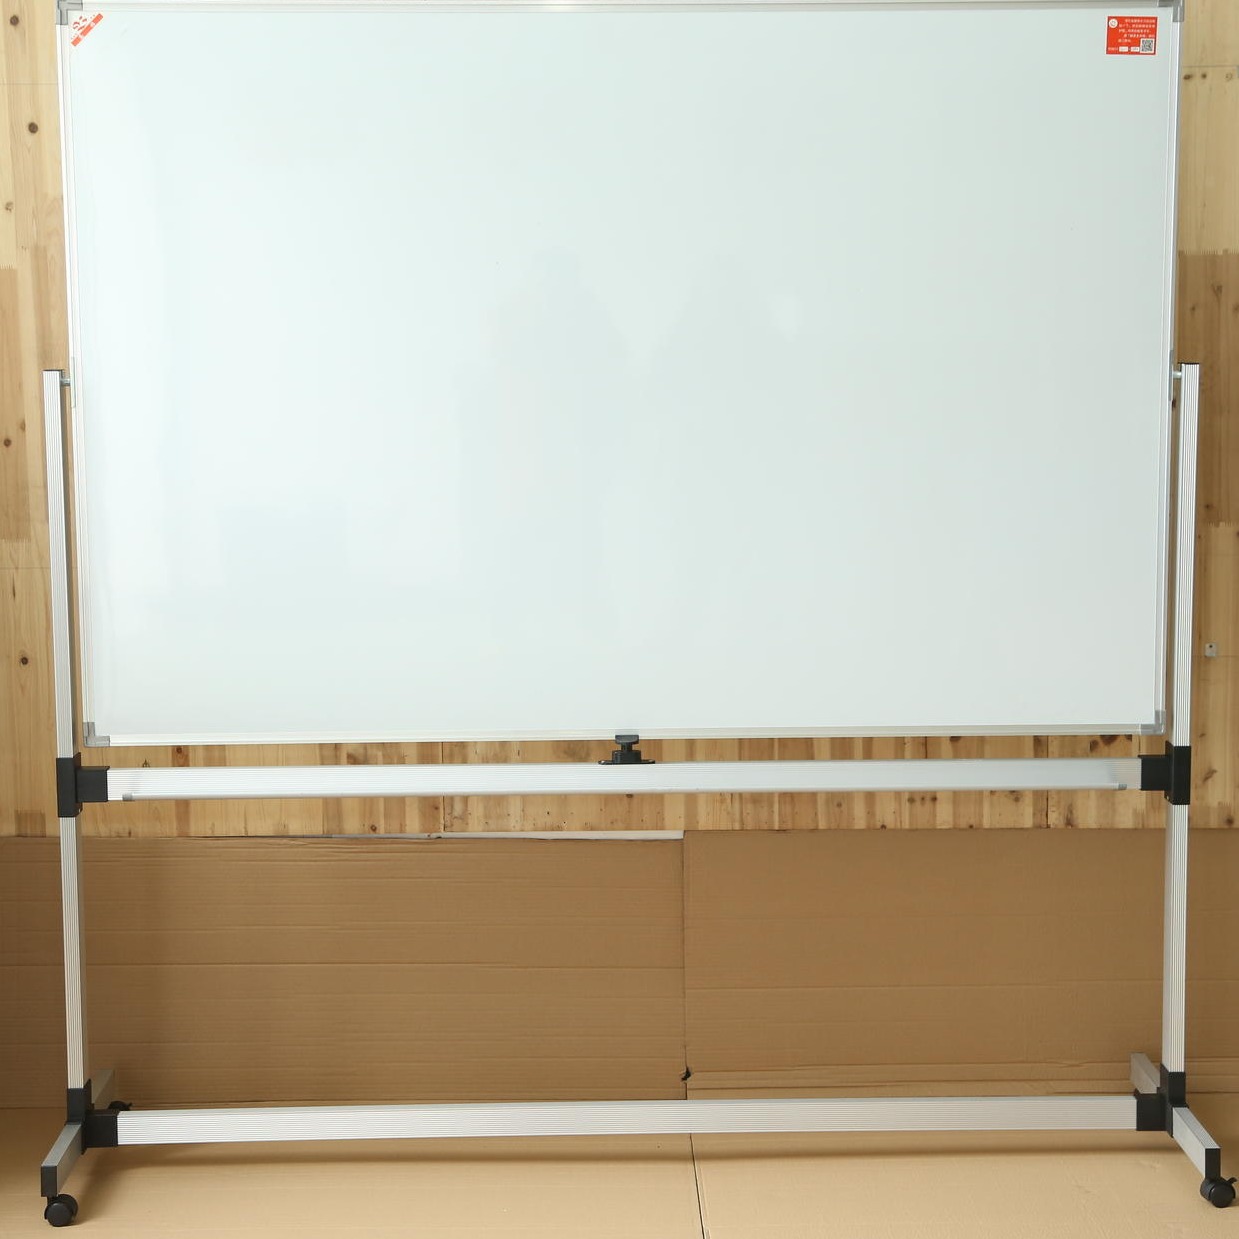 企业公司开会用的手写白板支架式移动立式磁性挂式写字记事板黑板批发